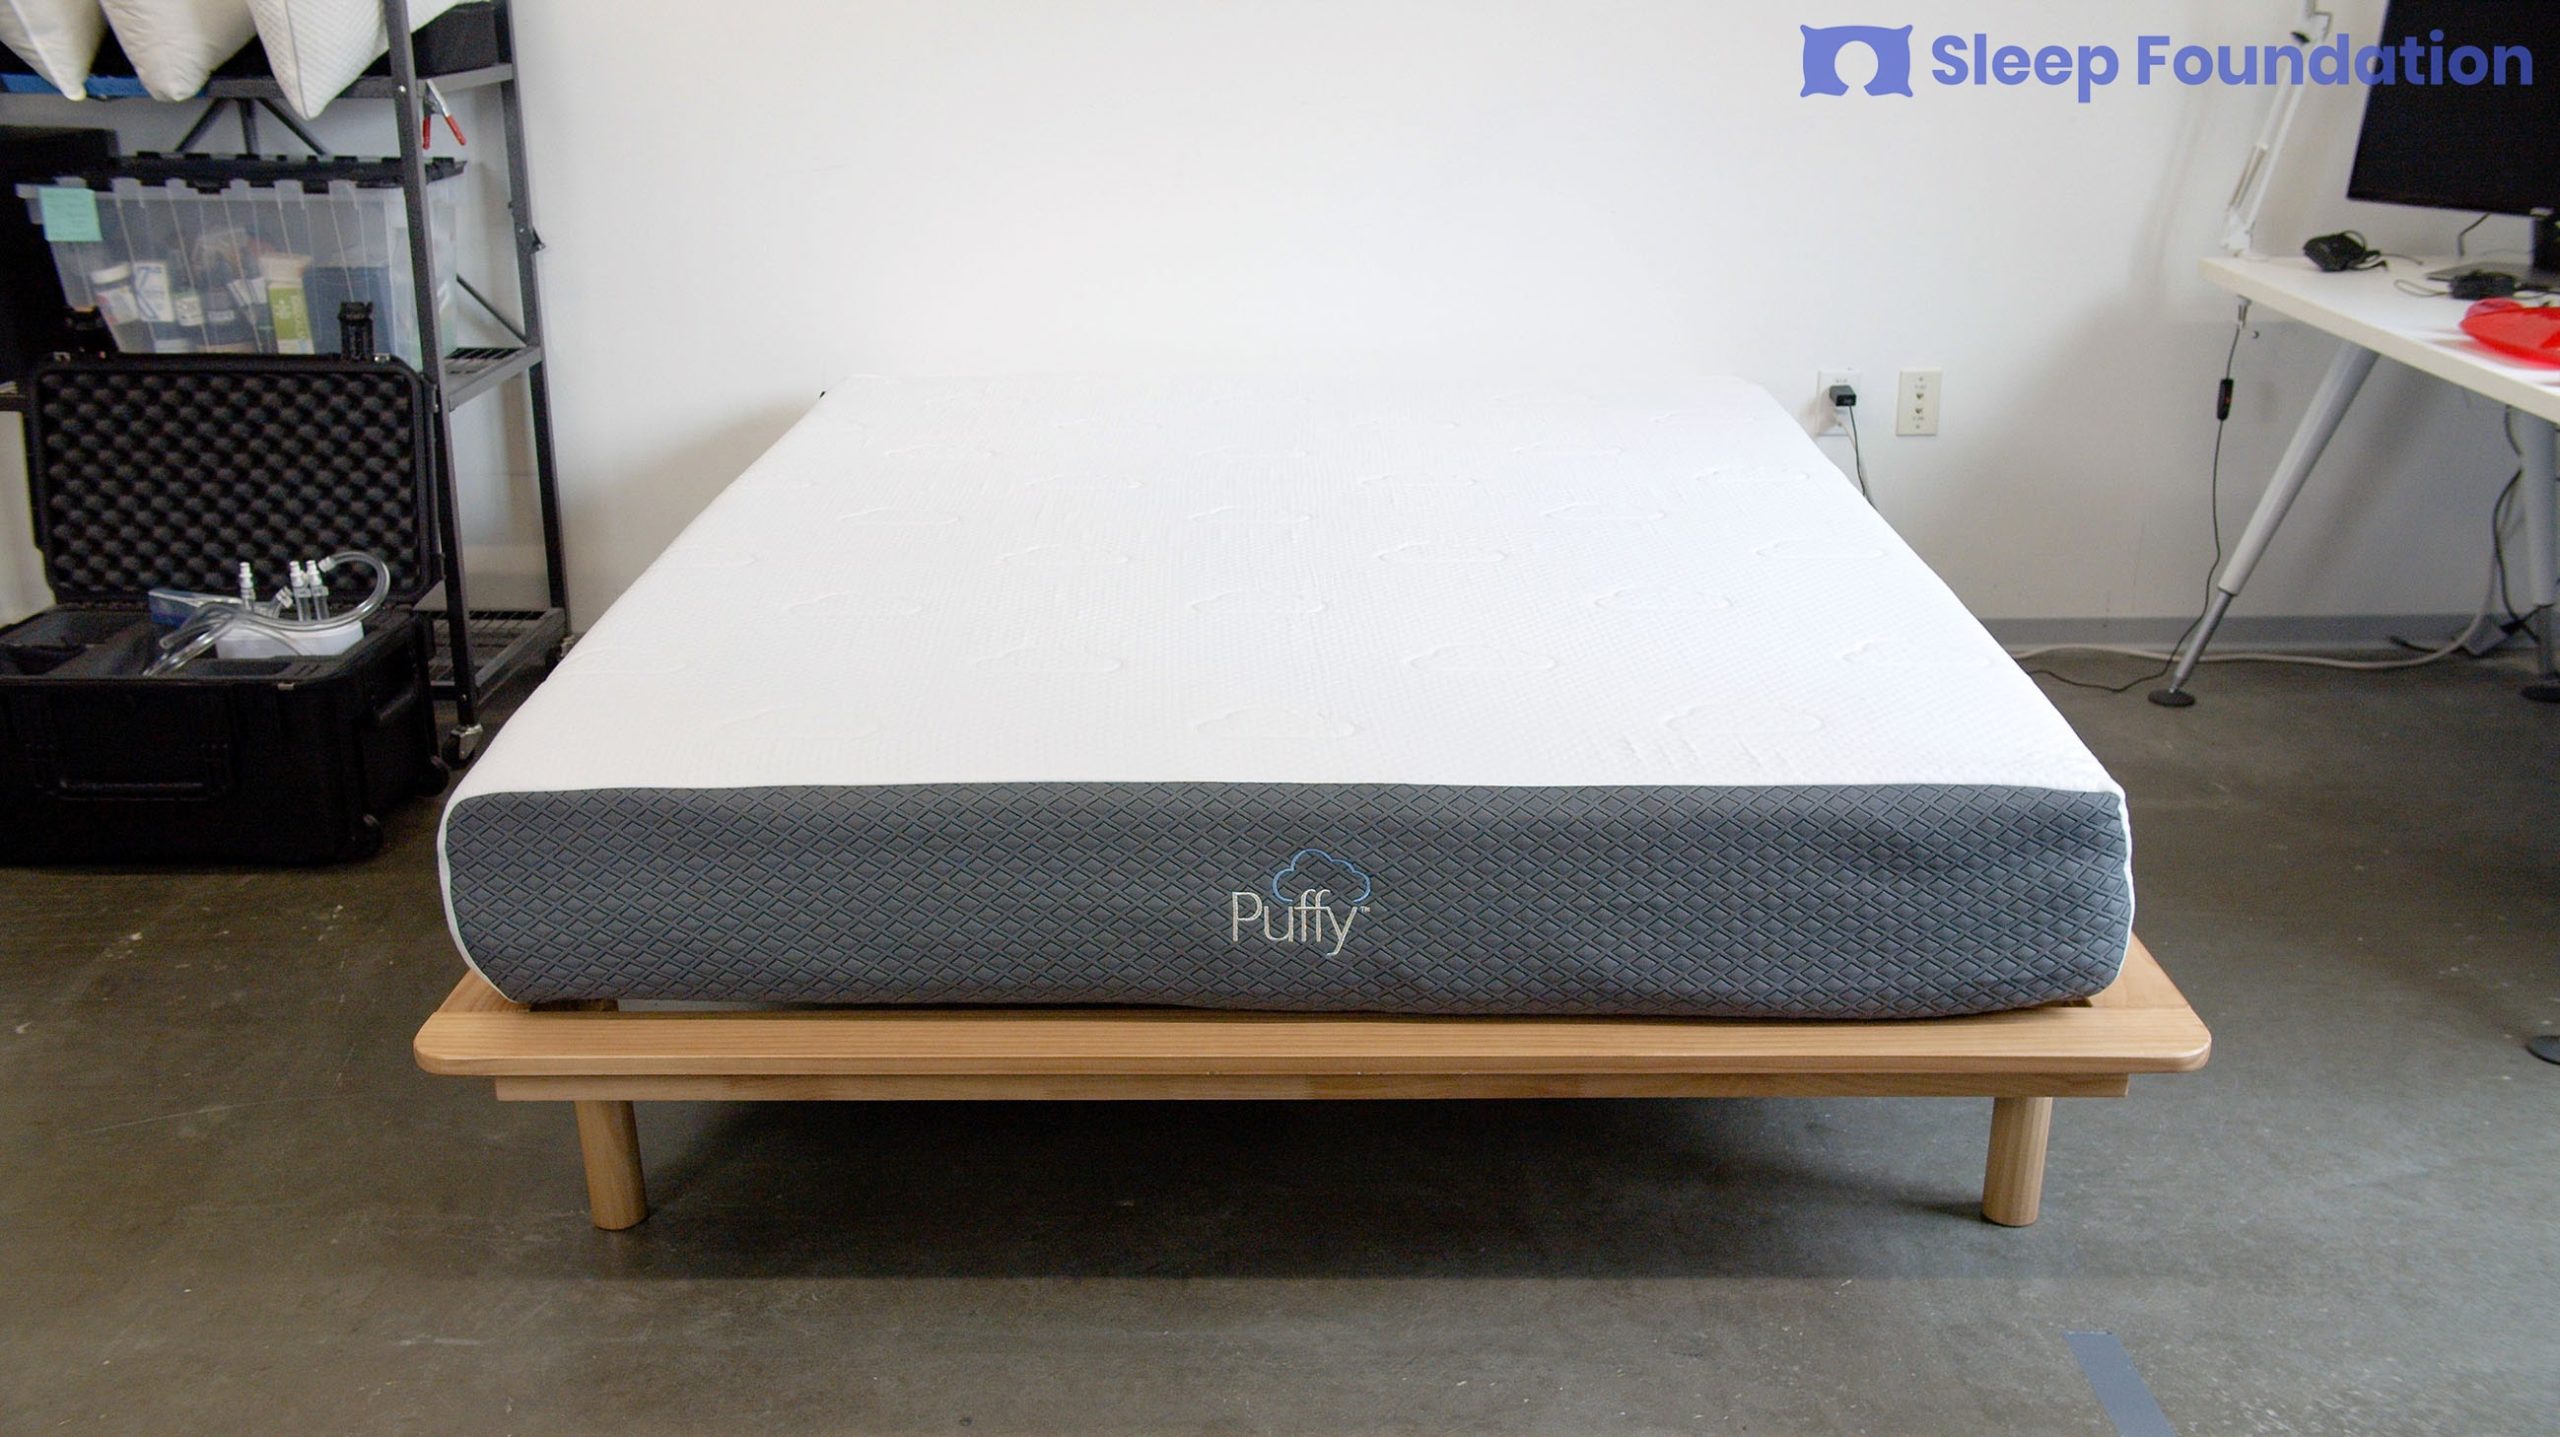 Puffy Mattress Review 2021 Sleep, Bed Frames For Puffy Mattress